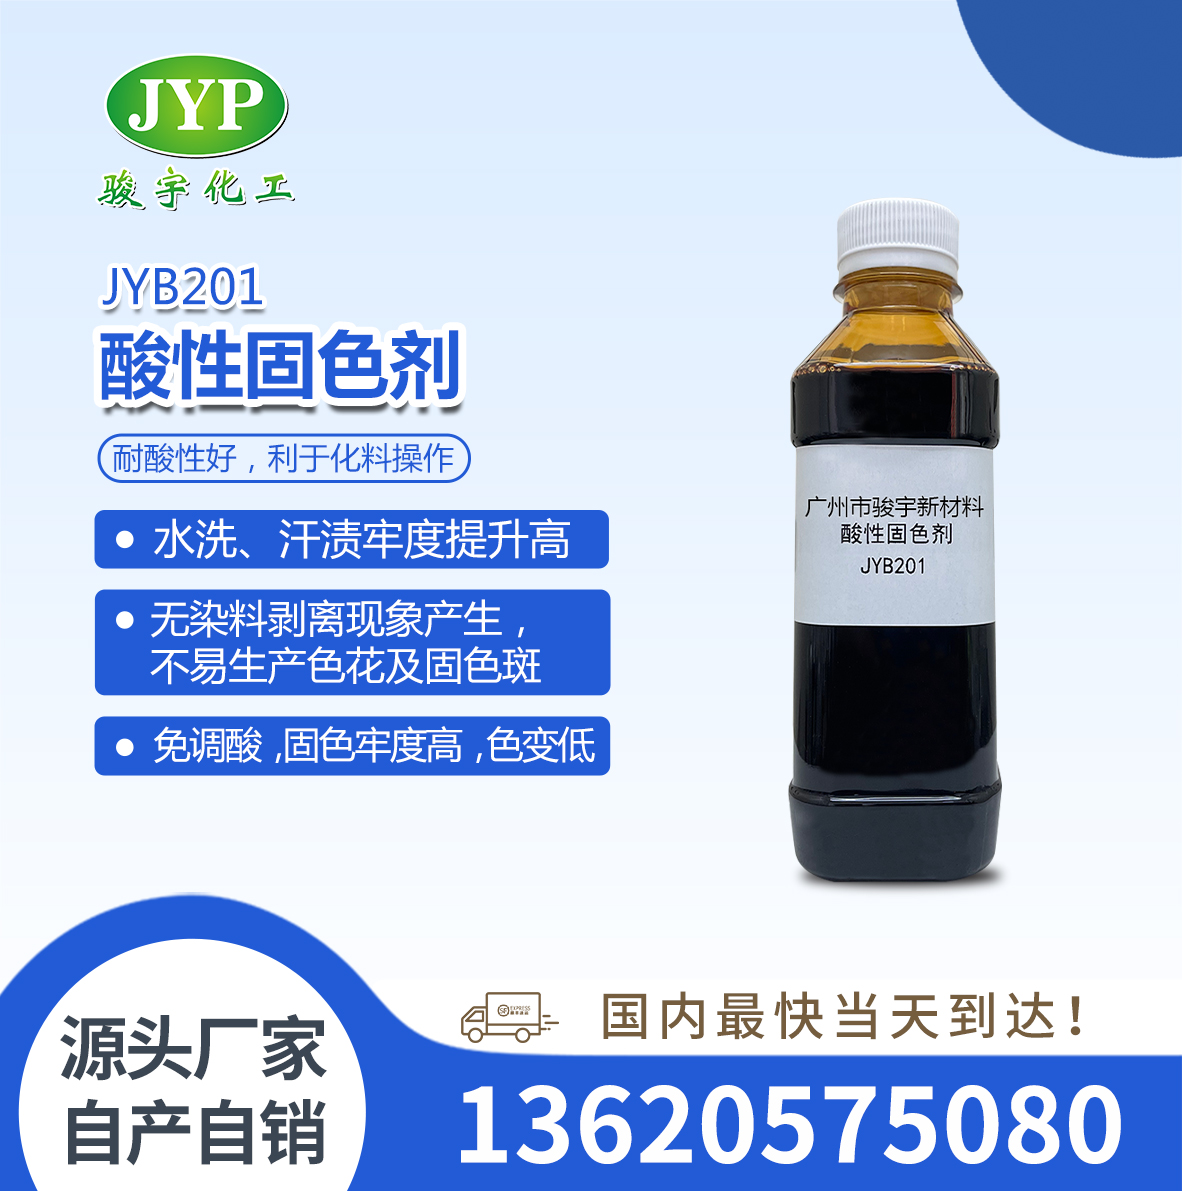 羊毛专用酸性固色剂JYB201-尼龙专用酸性固色剂JYB201-丝绸专用酸性固色剂JYB201-皮件专用酸性固色剂JYB201